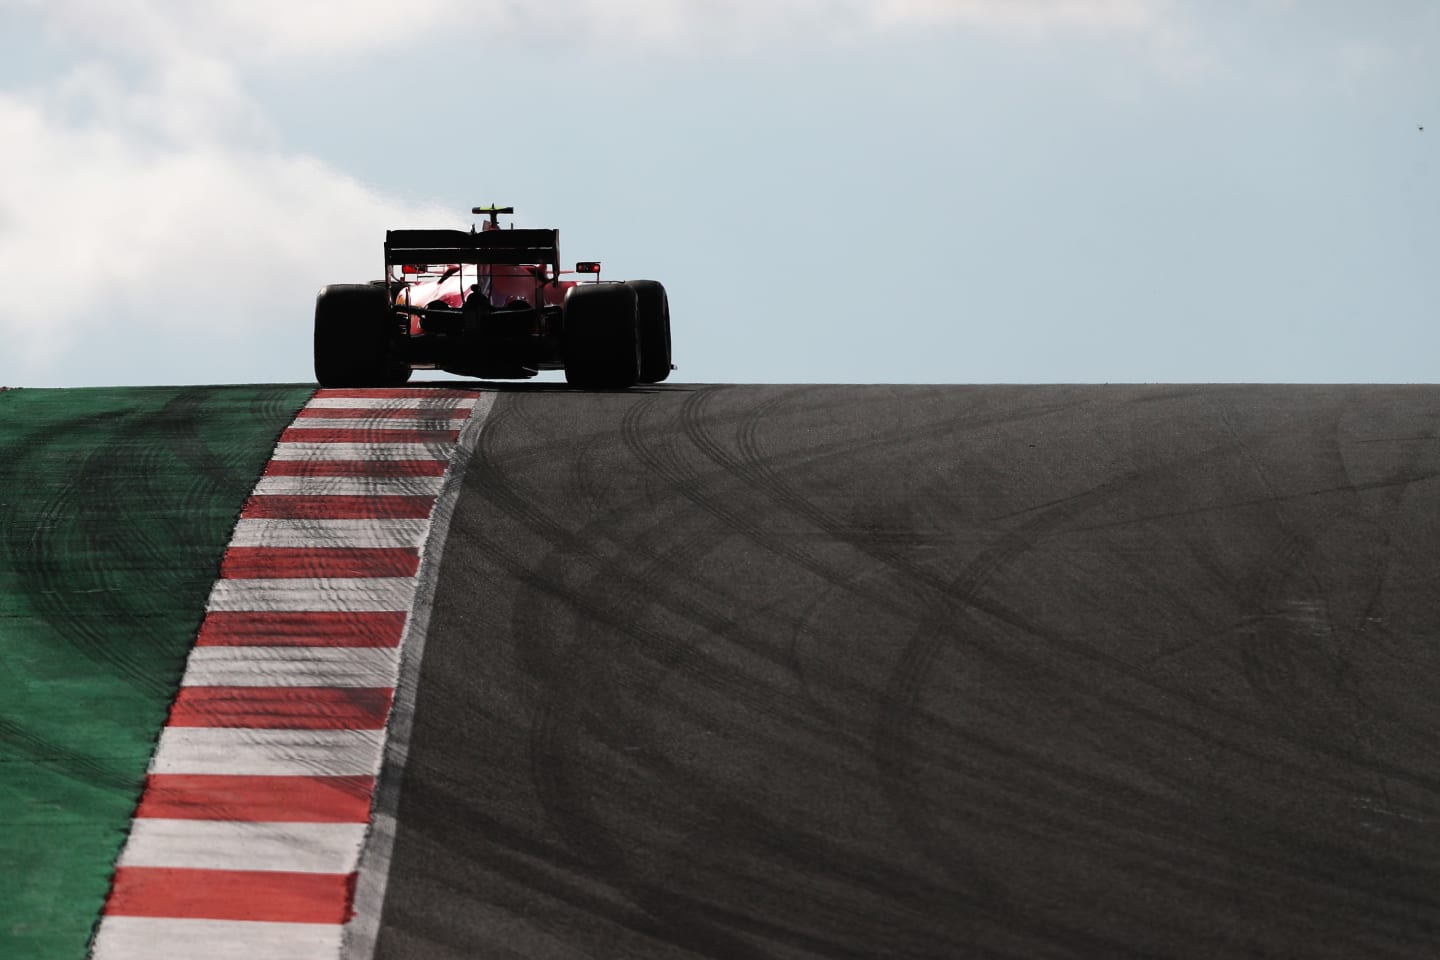 PORTIMAO, PORTUGAL - OCTOBER 23: Charles Leclerc of Monaco driving the (16) Scuderia Ferrari SF1000